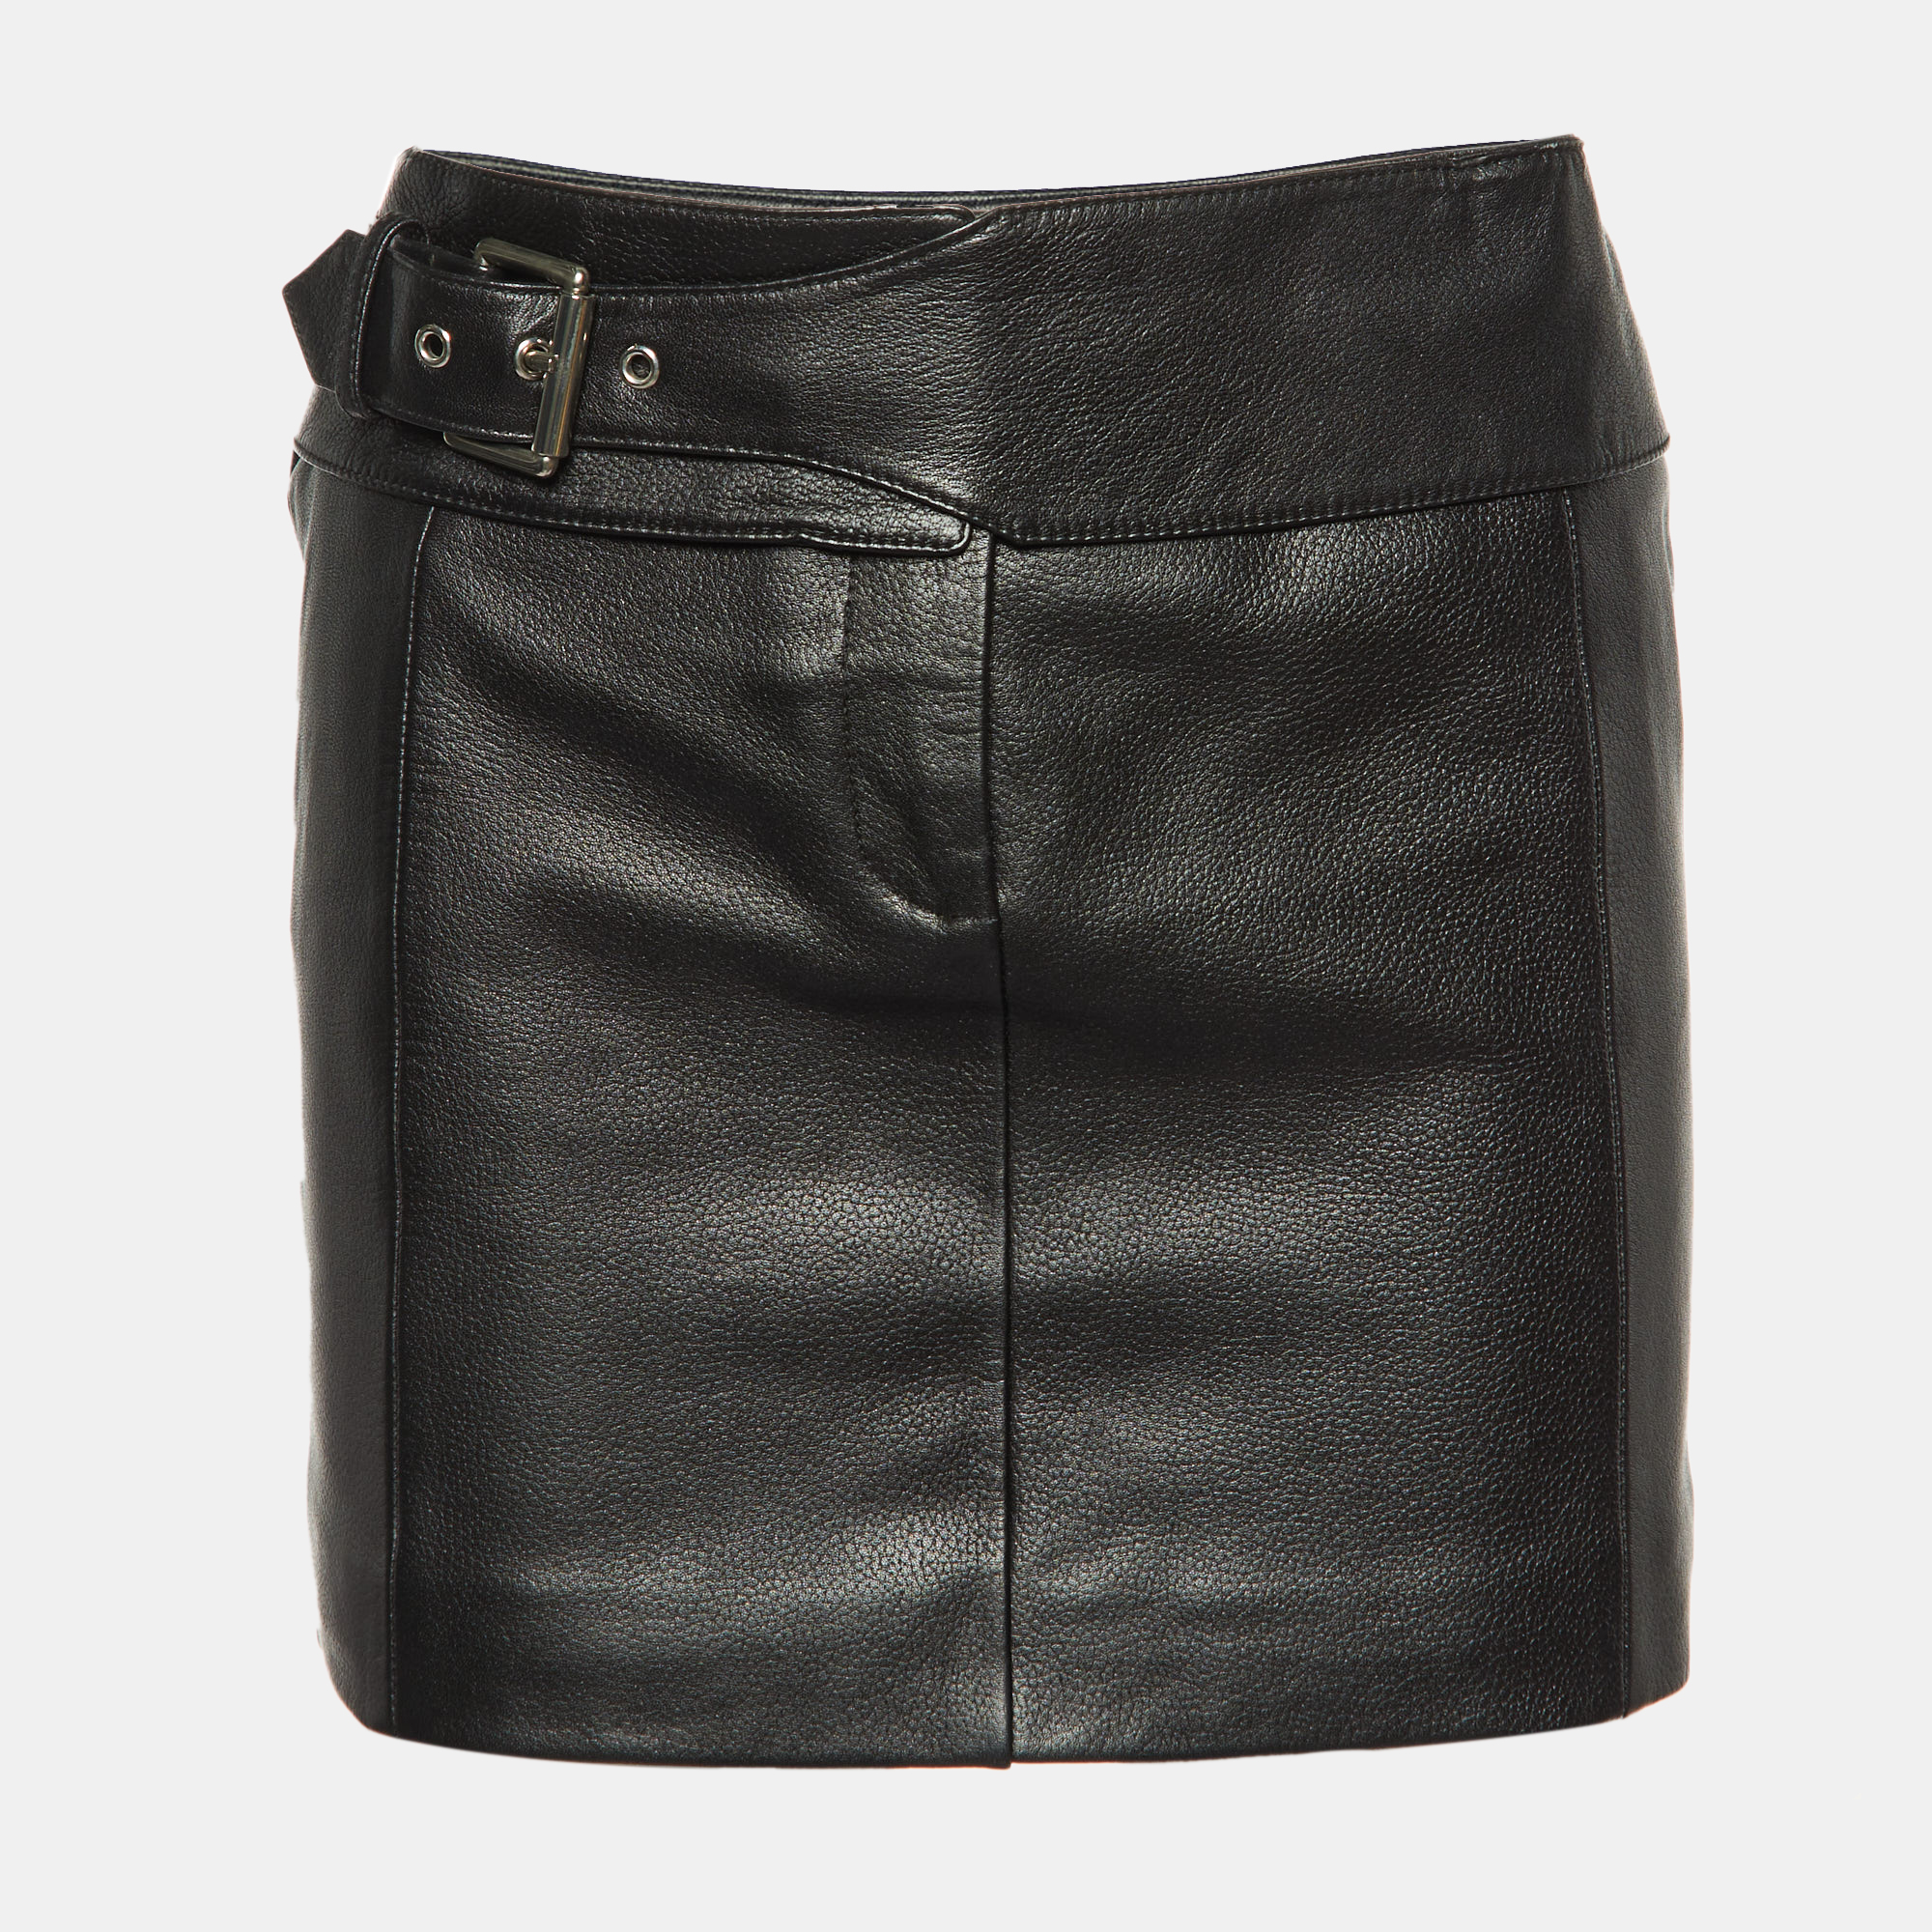 

Versus Versace Black Leather Mini Skirt